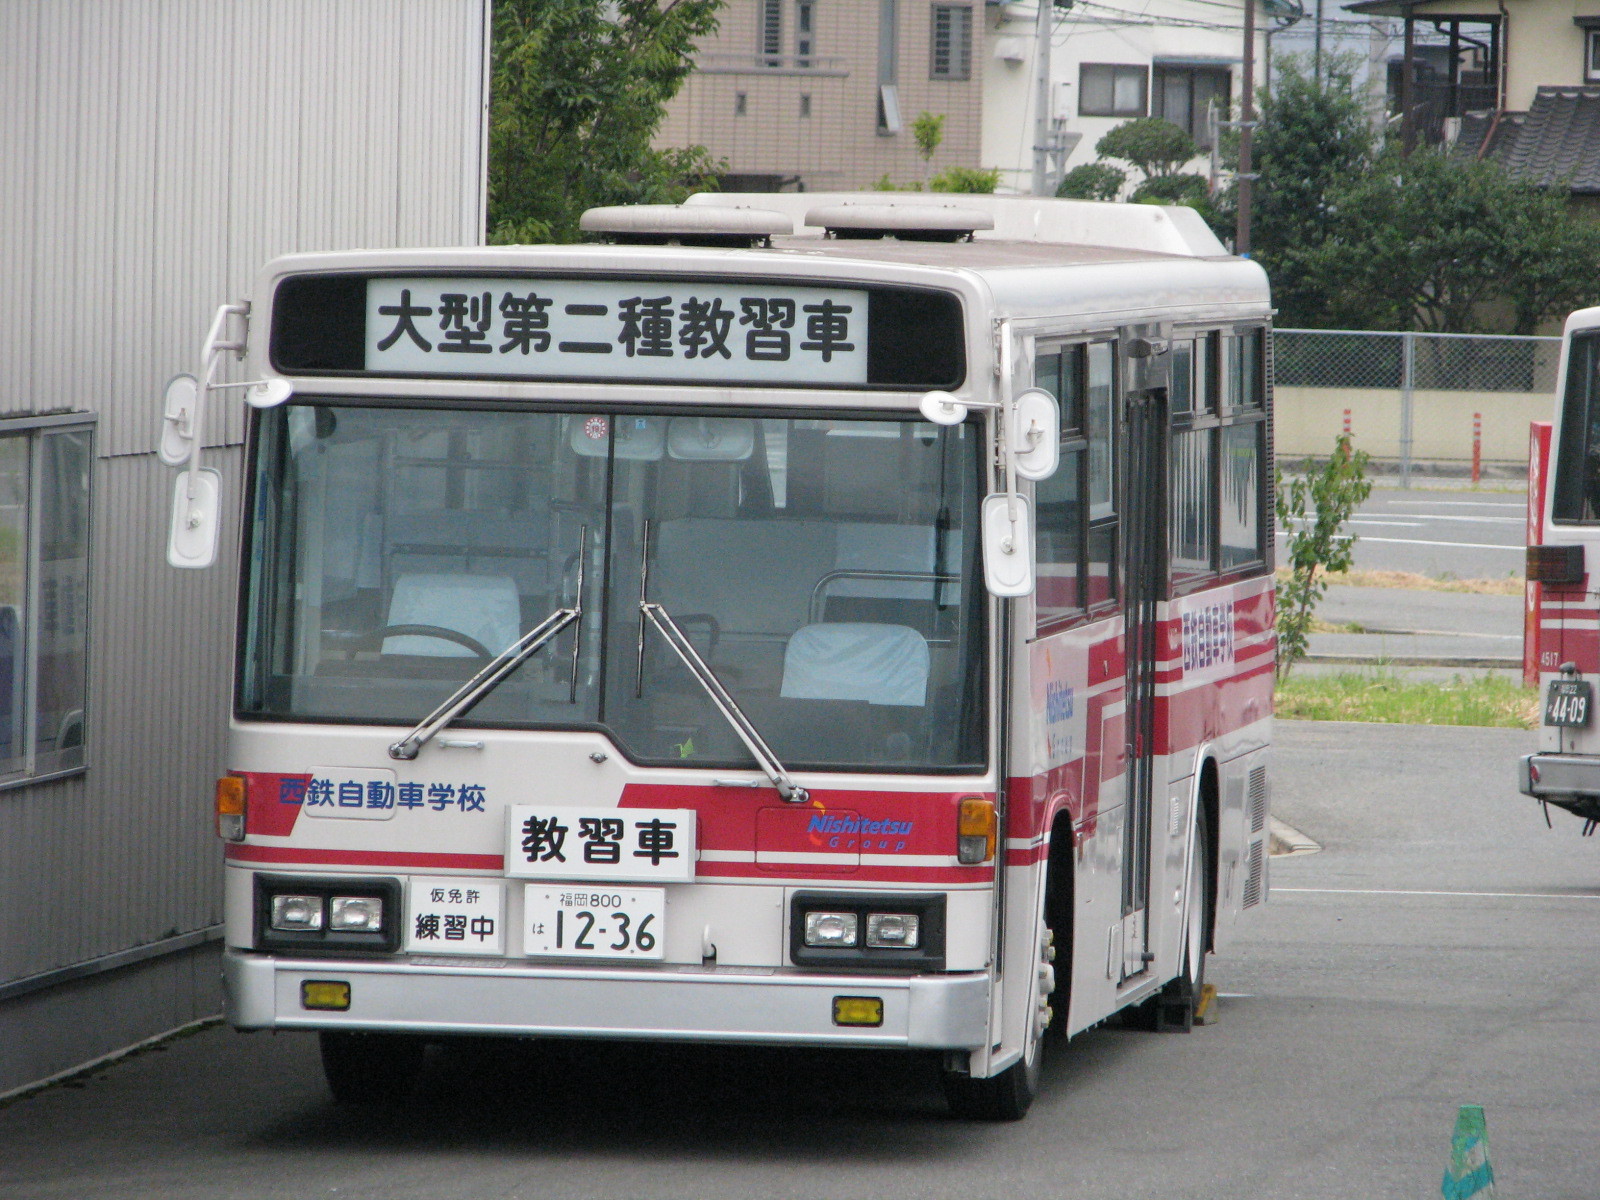 福岡800は12-36